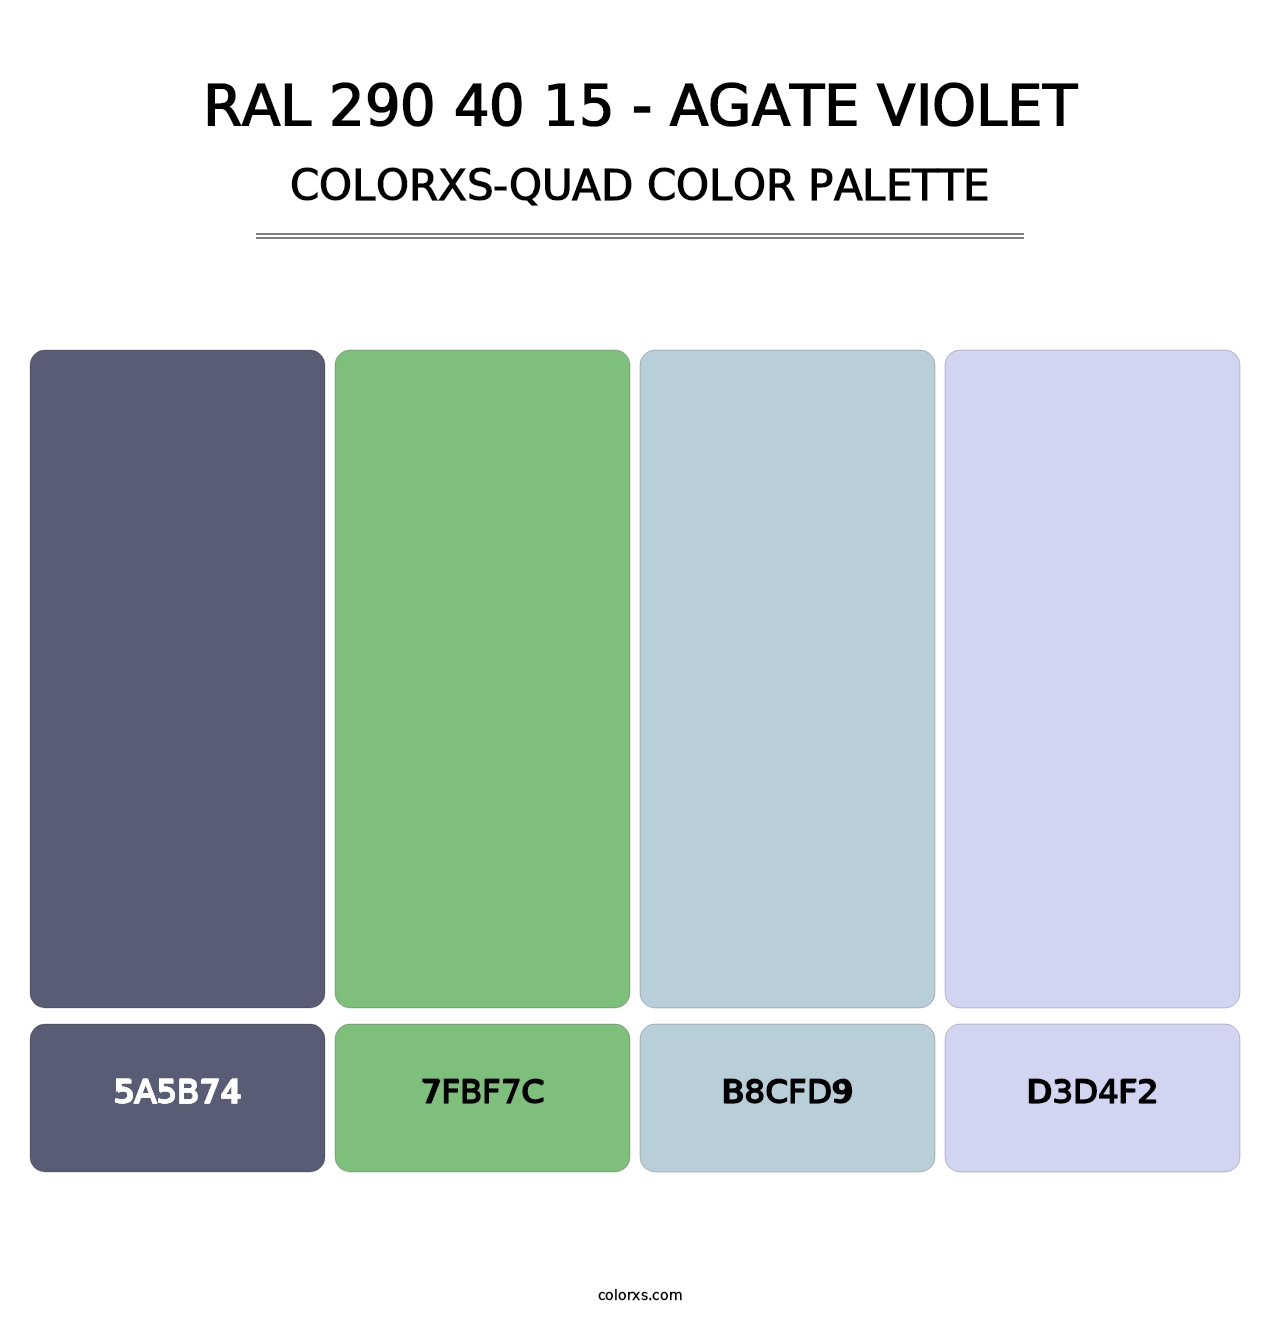 RAL 290 40 15 - Agate Violet - Colorxs Quad Palette